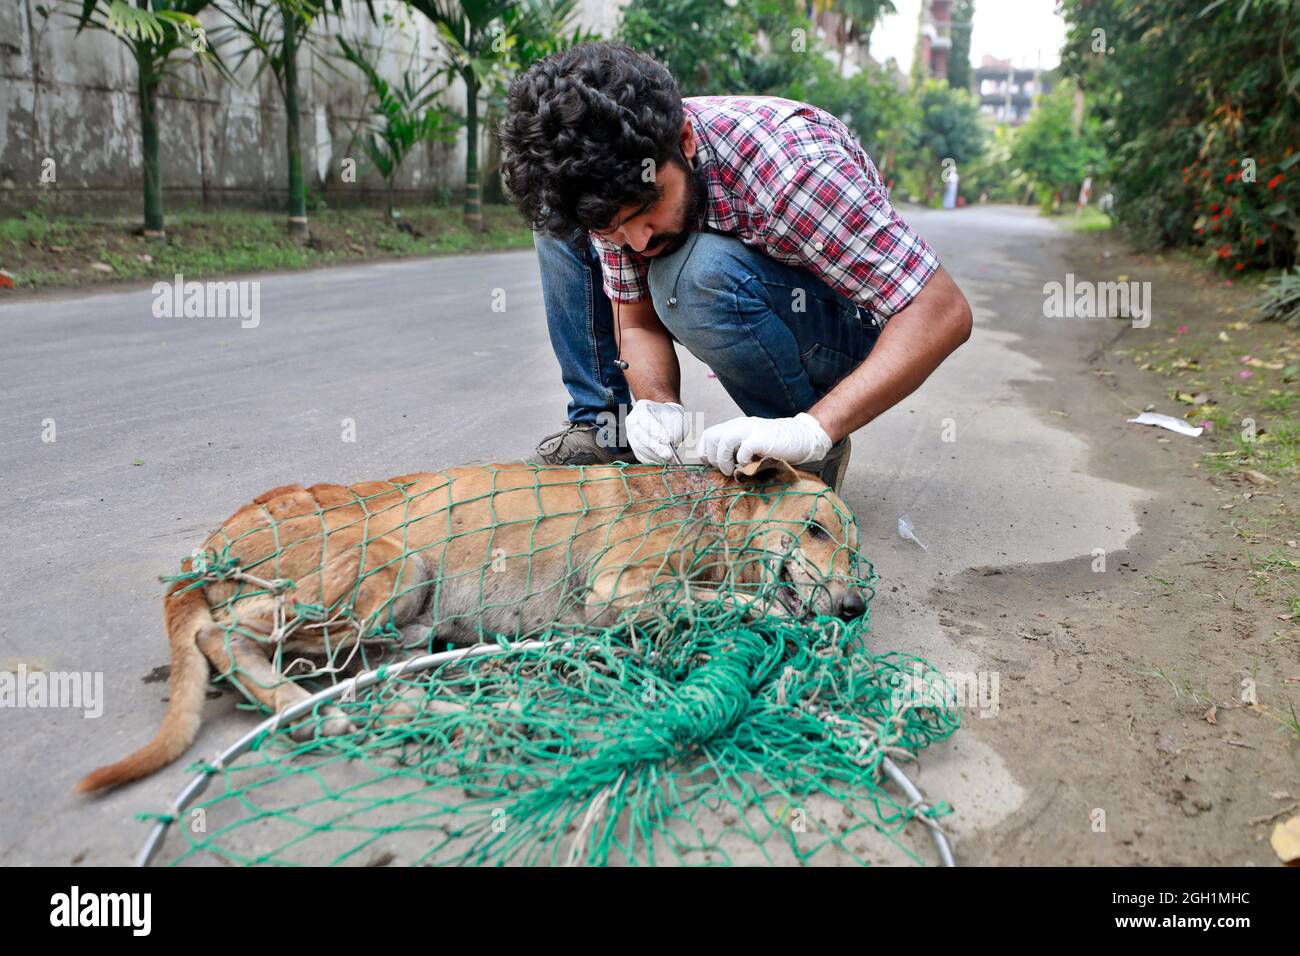 Dhaka, Bangladesh - 04 septembre 2021 : Abu Sufian, un jeune homme, traite et vaccine les chiens de rue à Dhaka de sa propre initiative. Banque D'Images